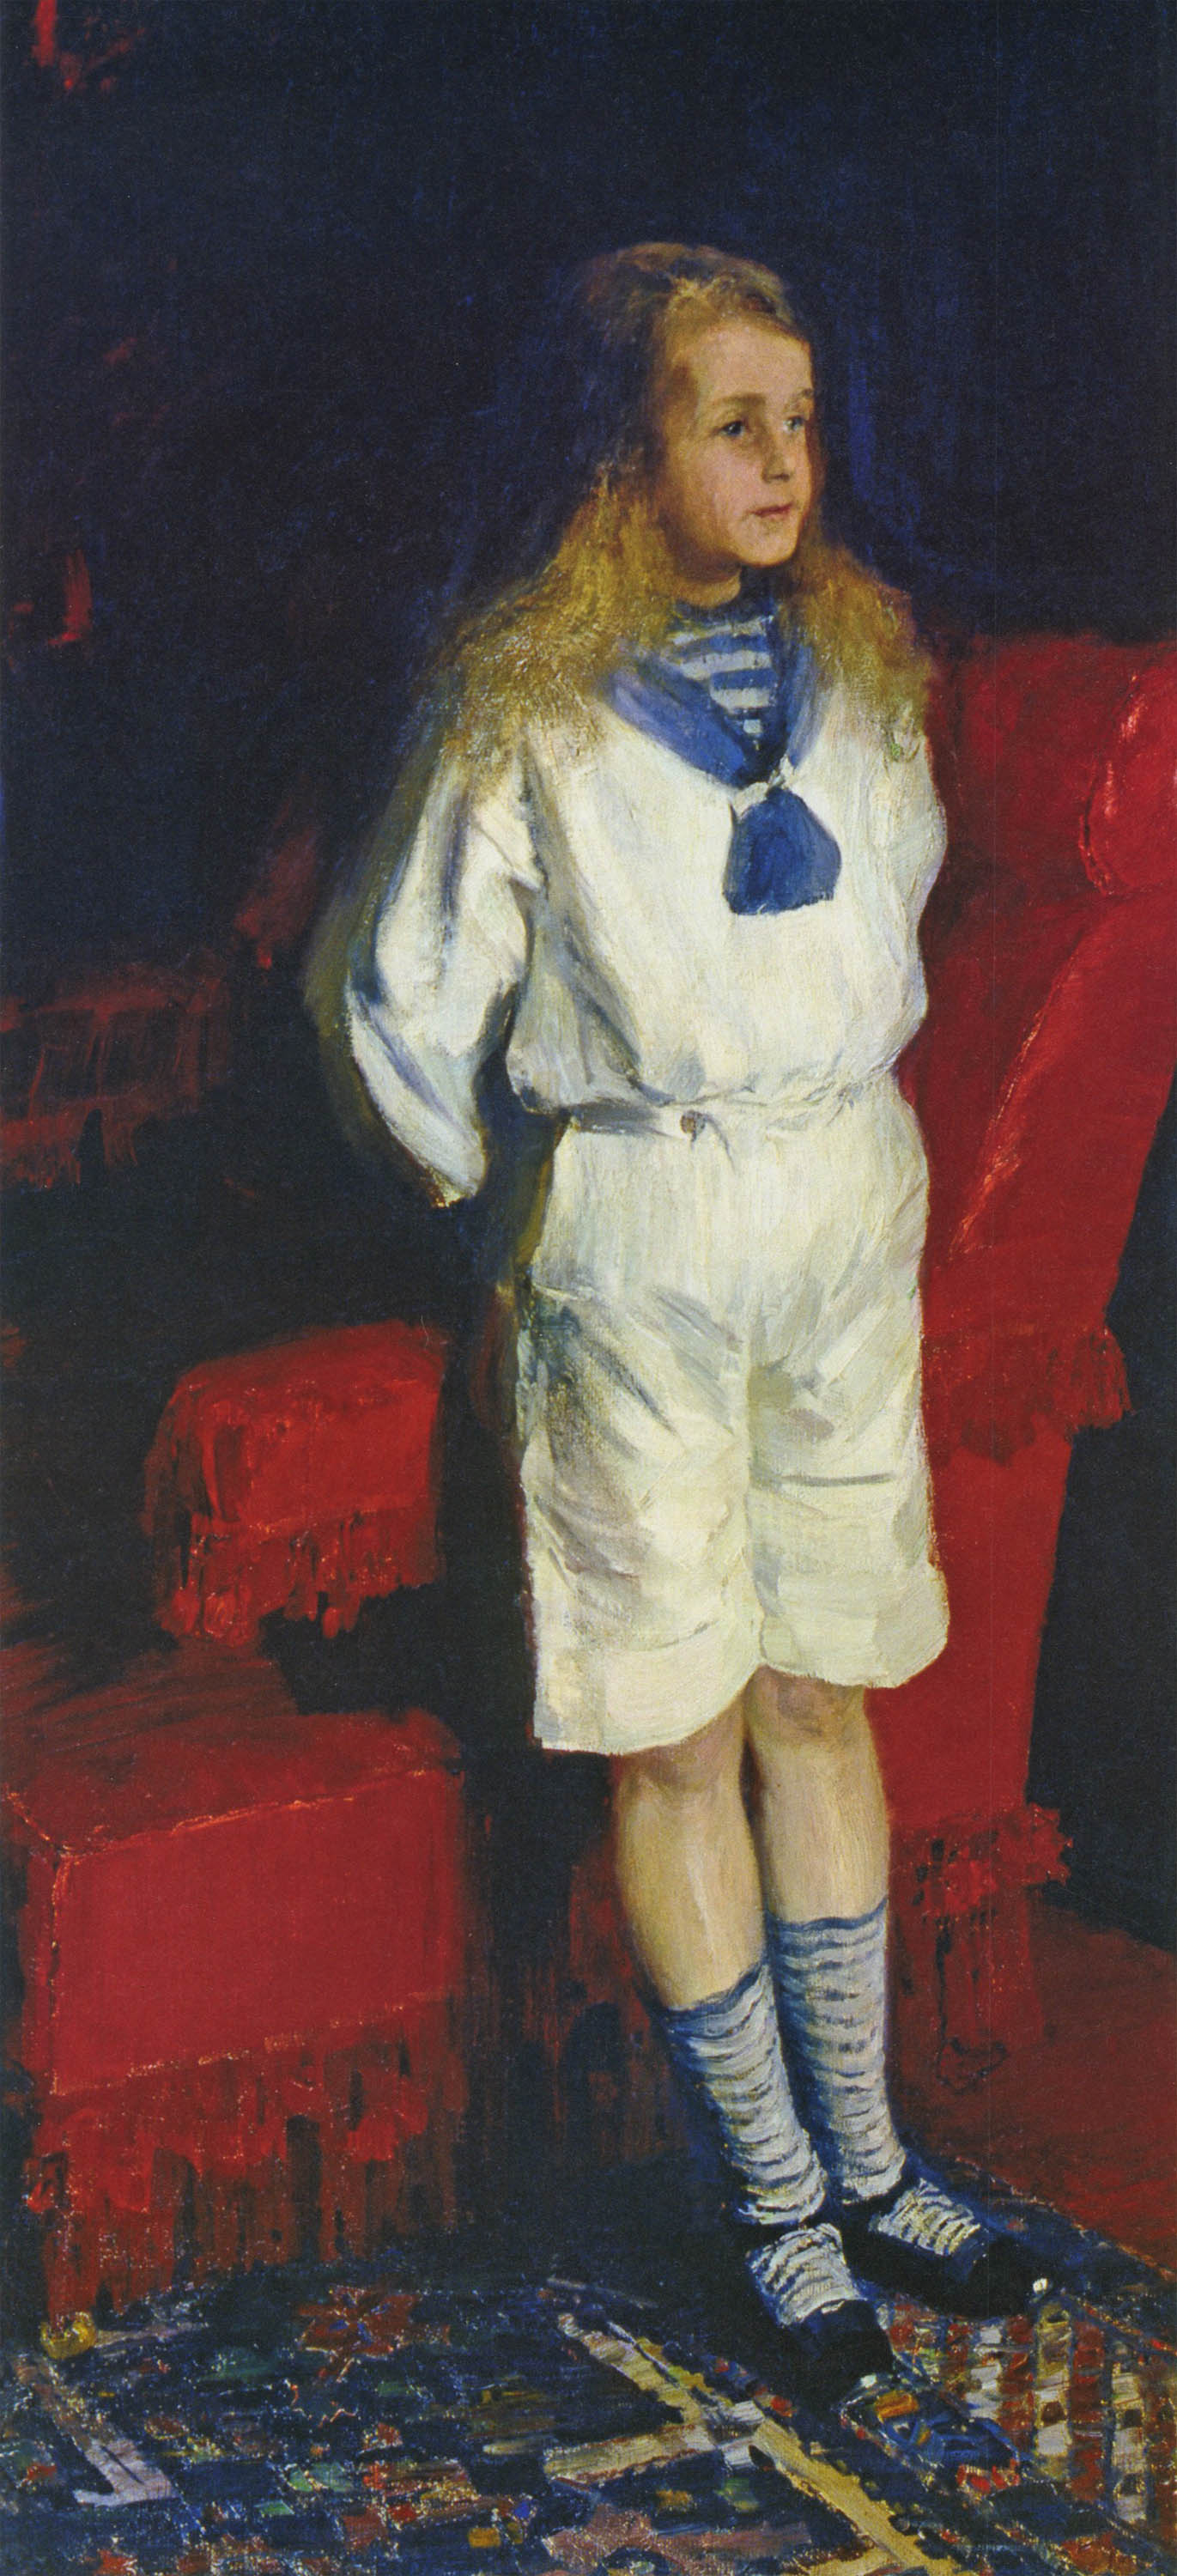 Малявин. Портрет мальчика. 1890-е